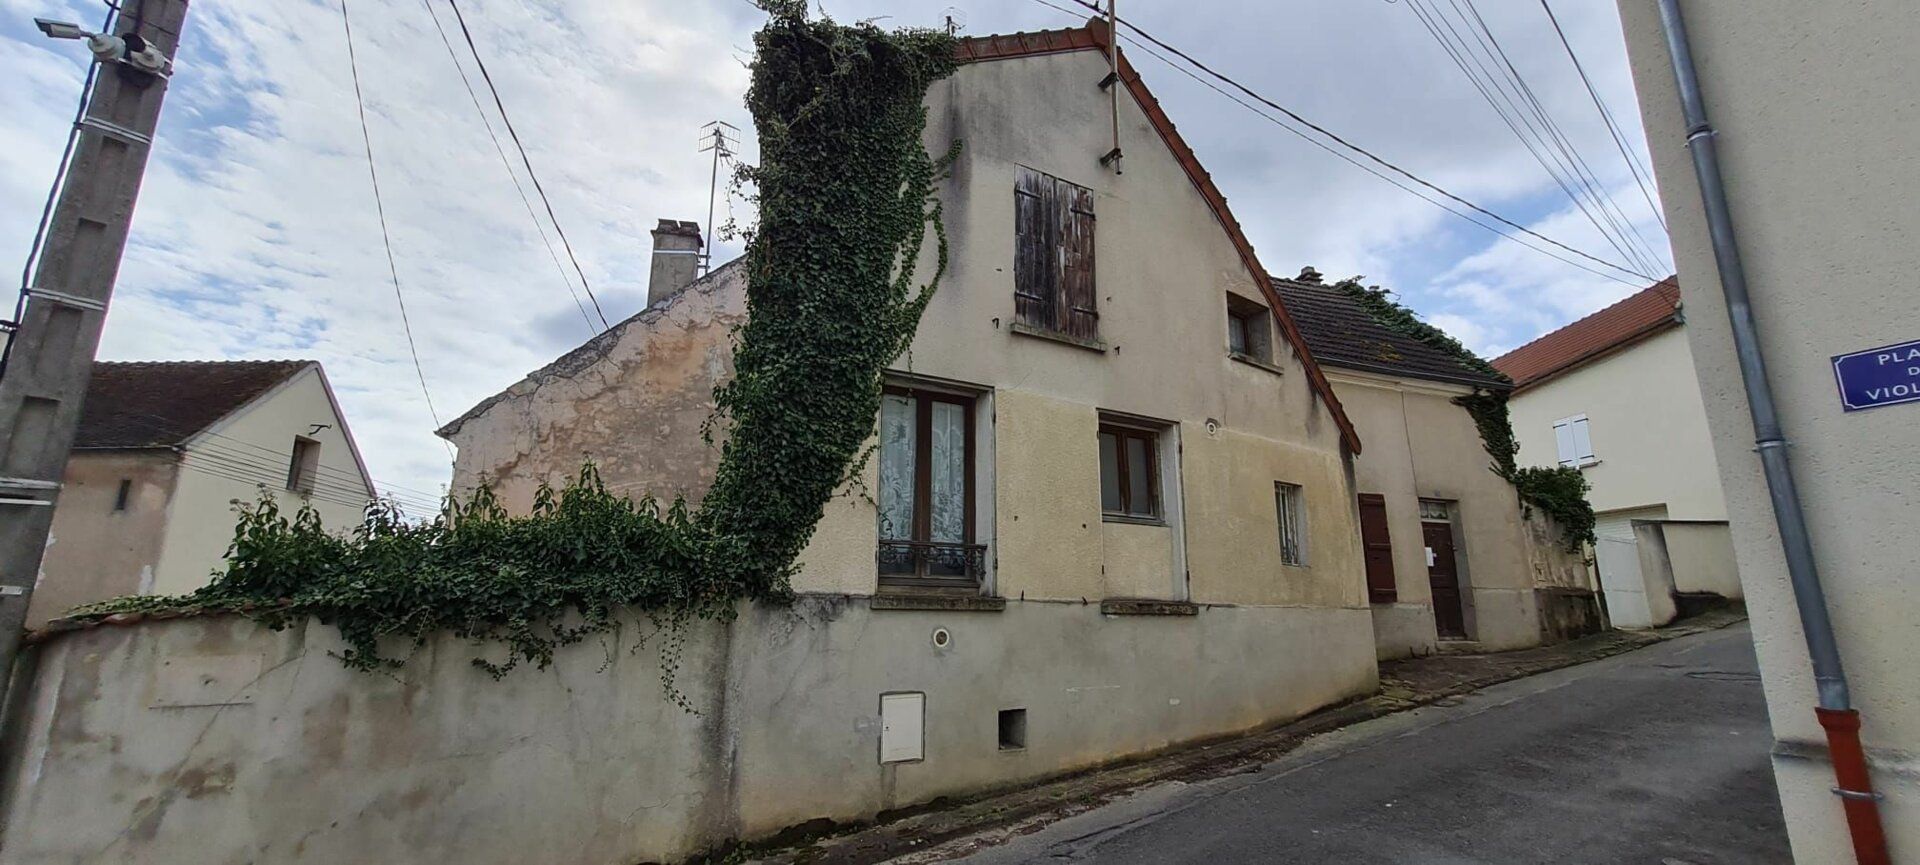 Maison à vendre 4 116m2 à Saâcy-sur-Marne vignette-1